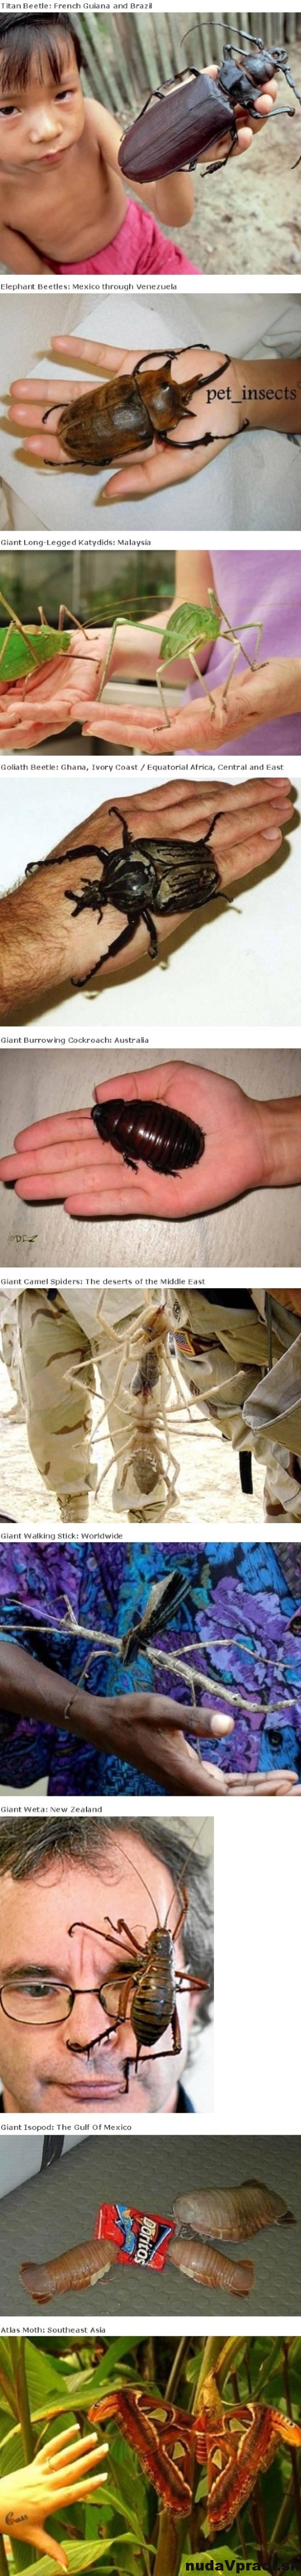 Desať najväčších hmyzov na svete